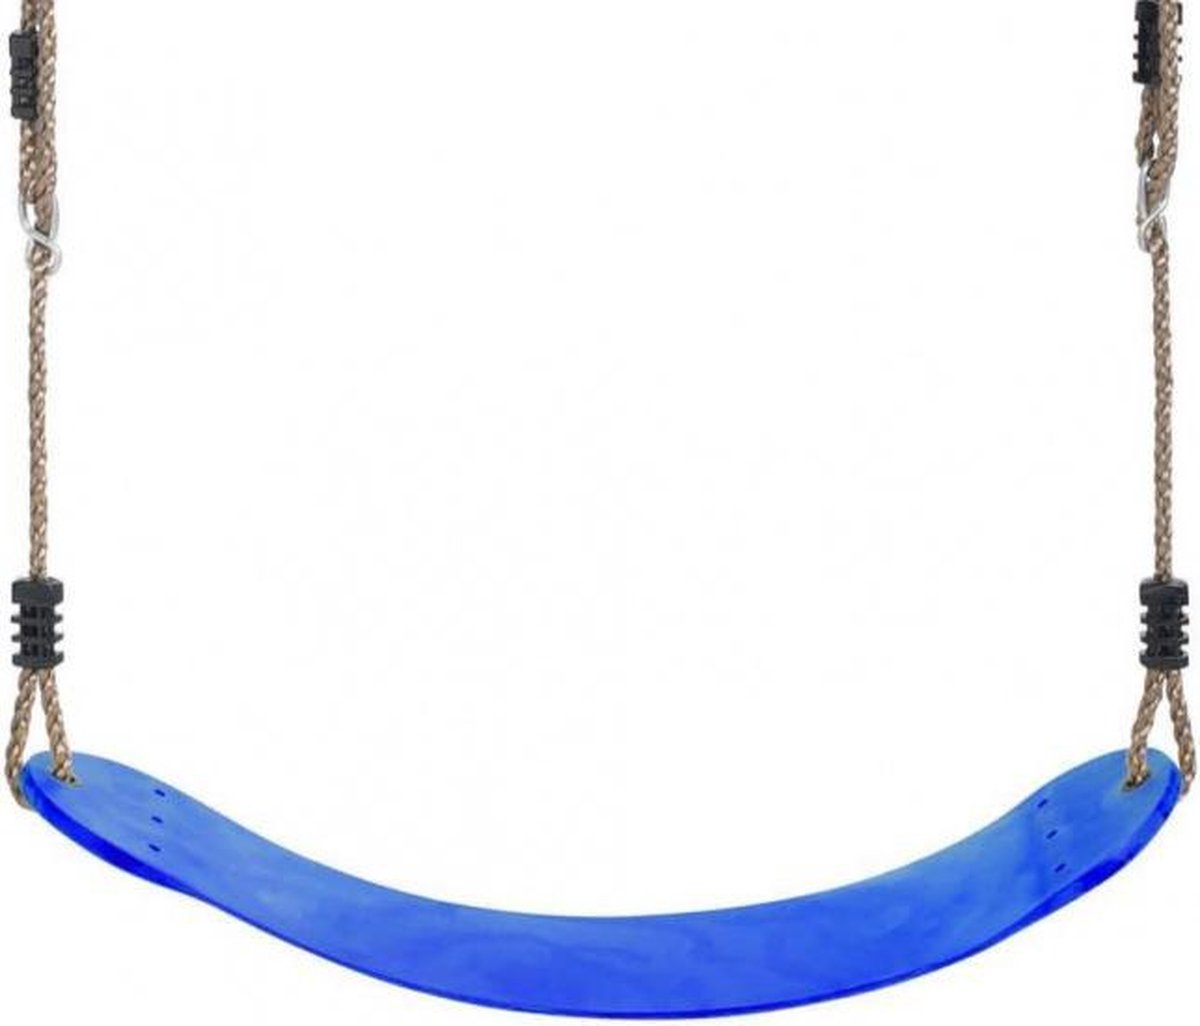 schommelzitje Flex kunststof 66 x 14 cm blauw